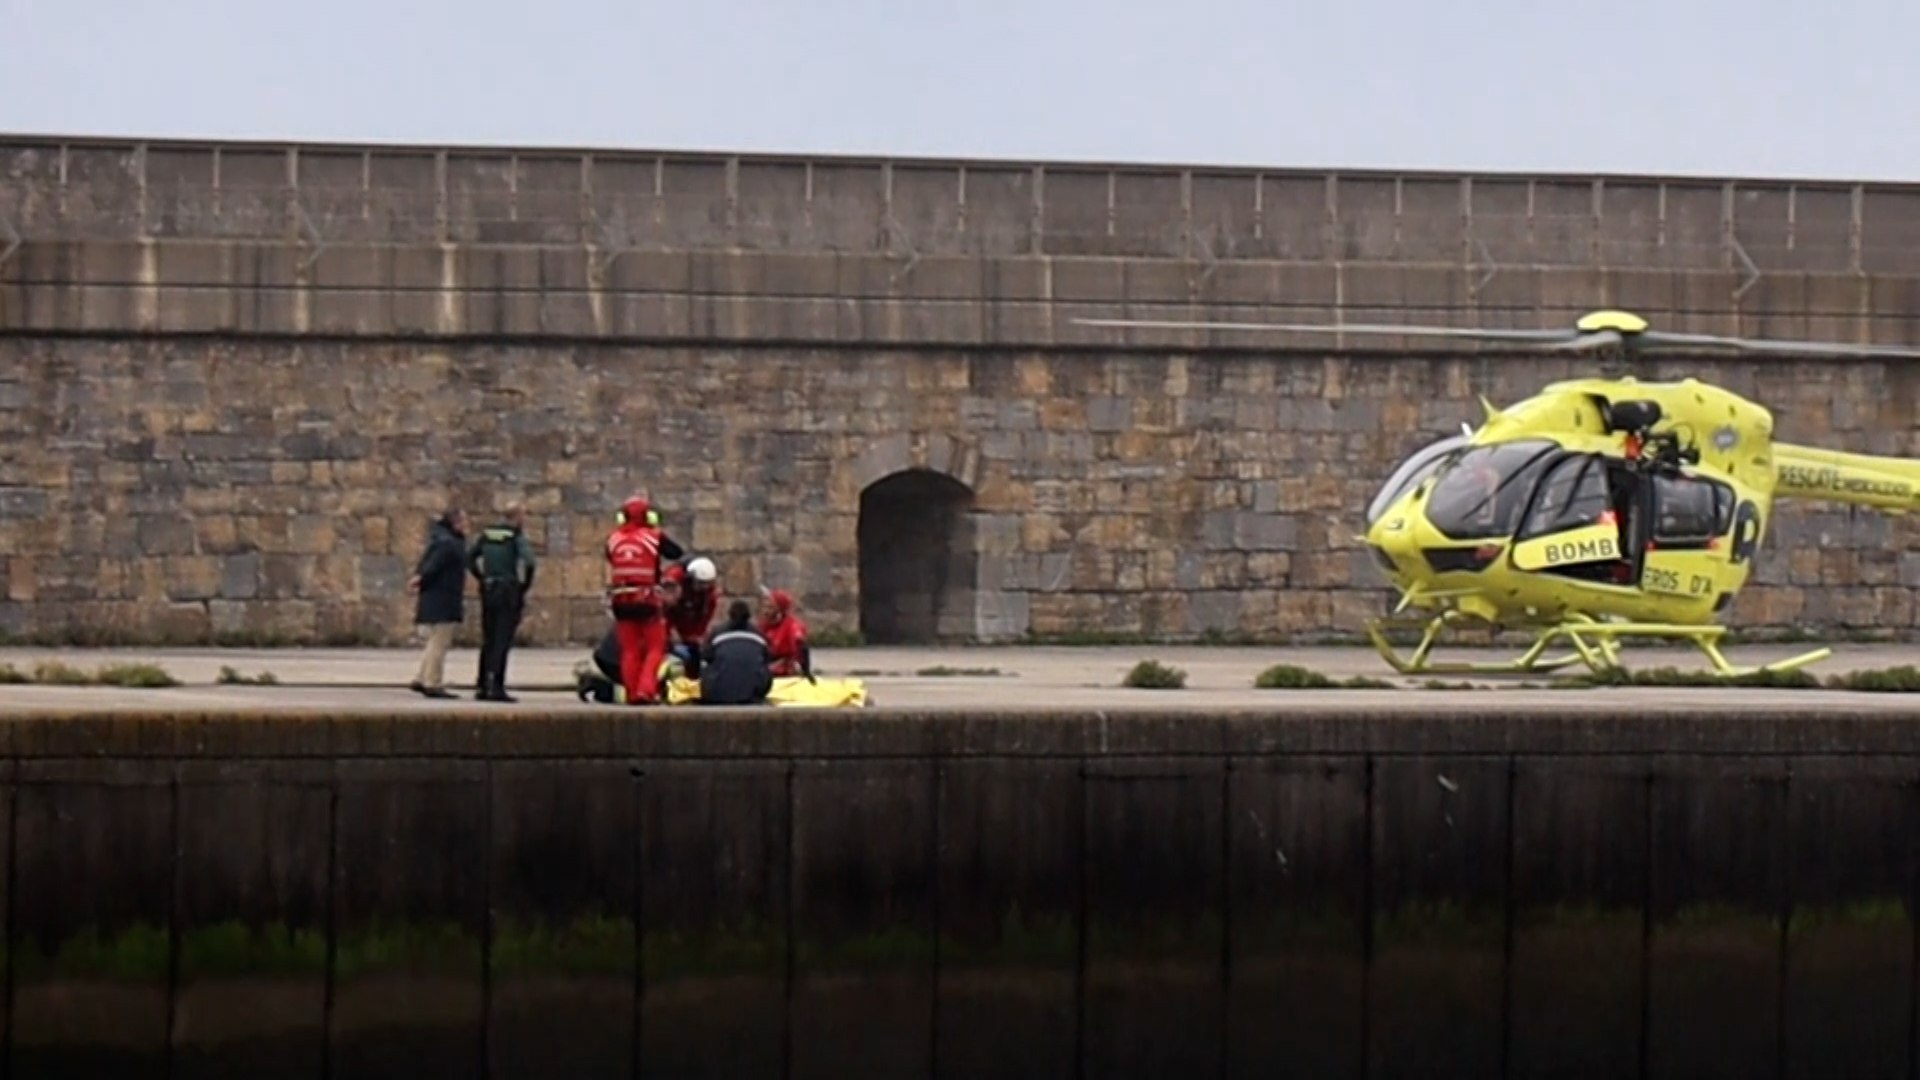 Cuatro personas mueren ahogadas en Asturias y Tarragona en plena borrasca Nelson